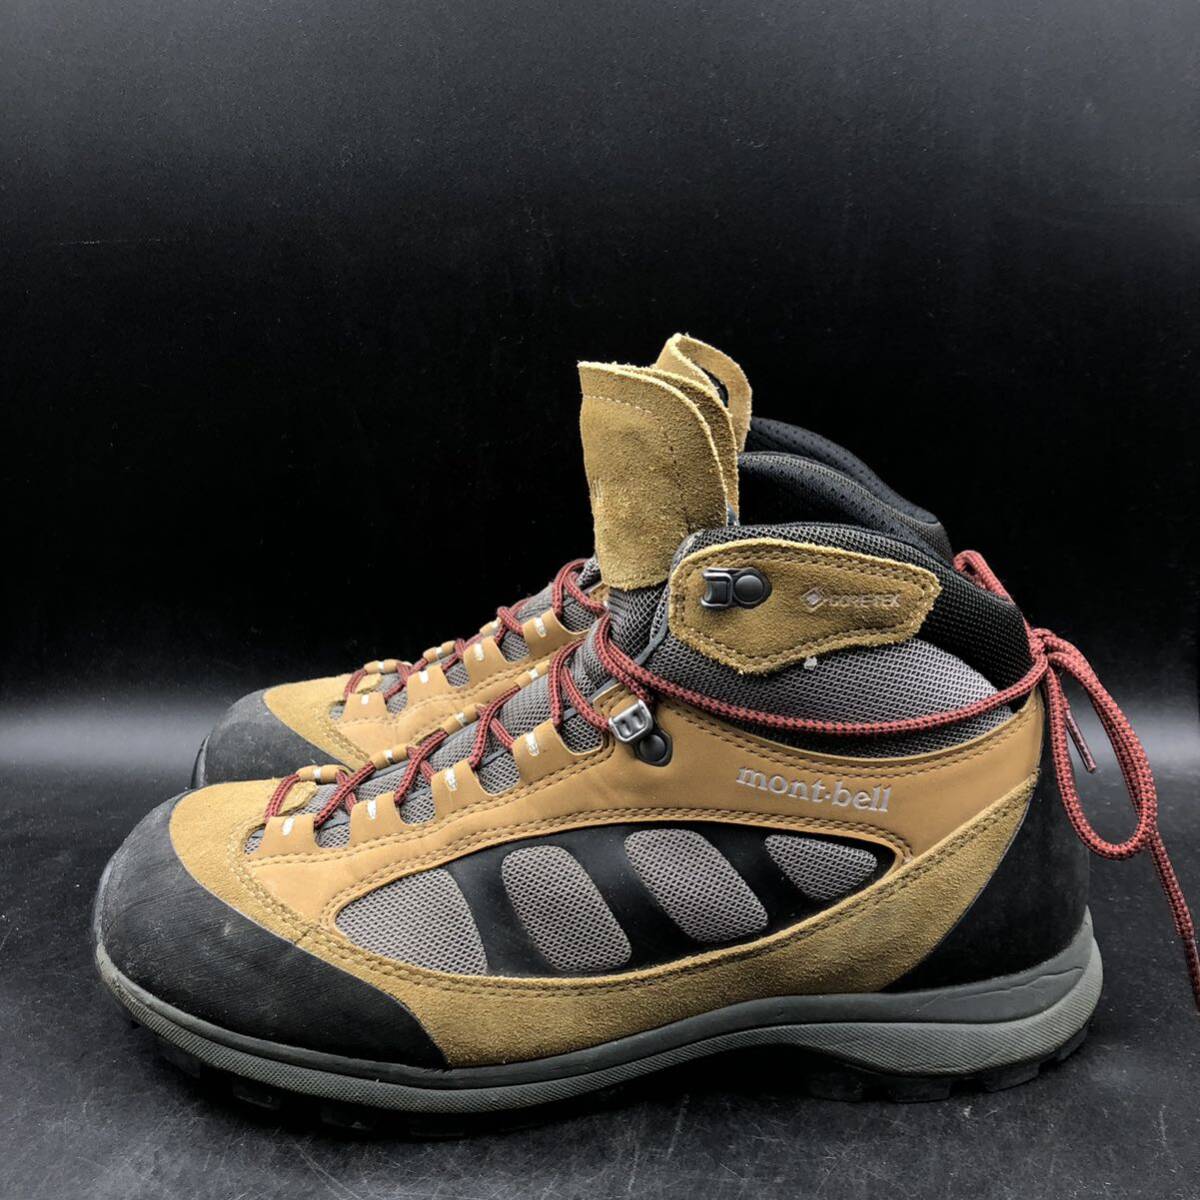 M2790 mont-bell モンベル トレッキングシューズ ブーツ GORE-TEX ゴアテックス メンズ US9/27.0cm ブラウン系 登山靴の画像4